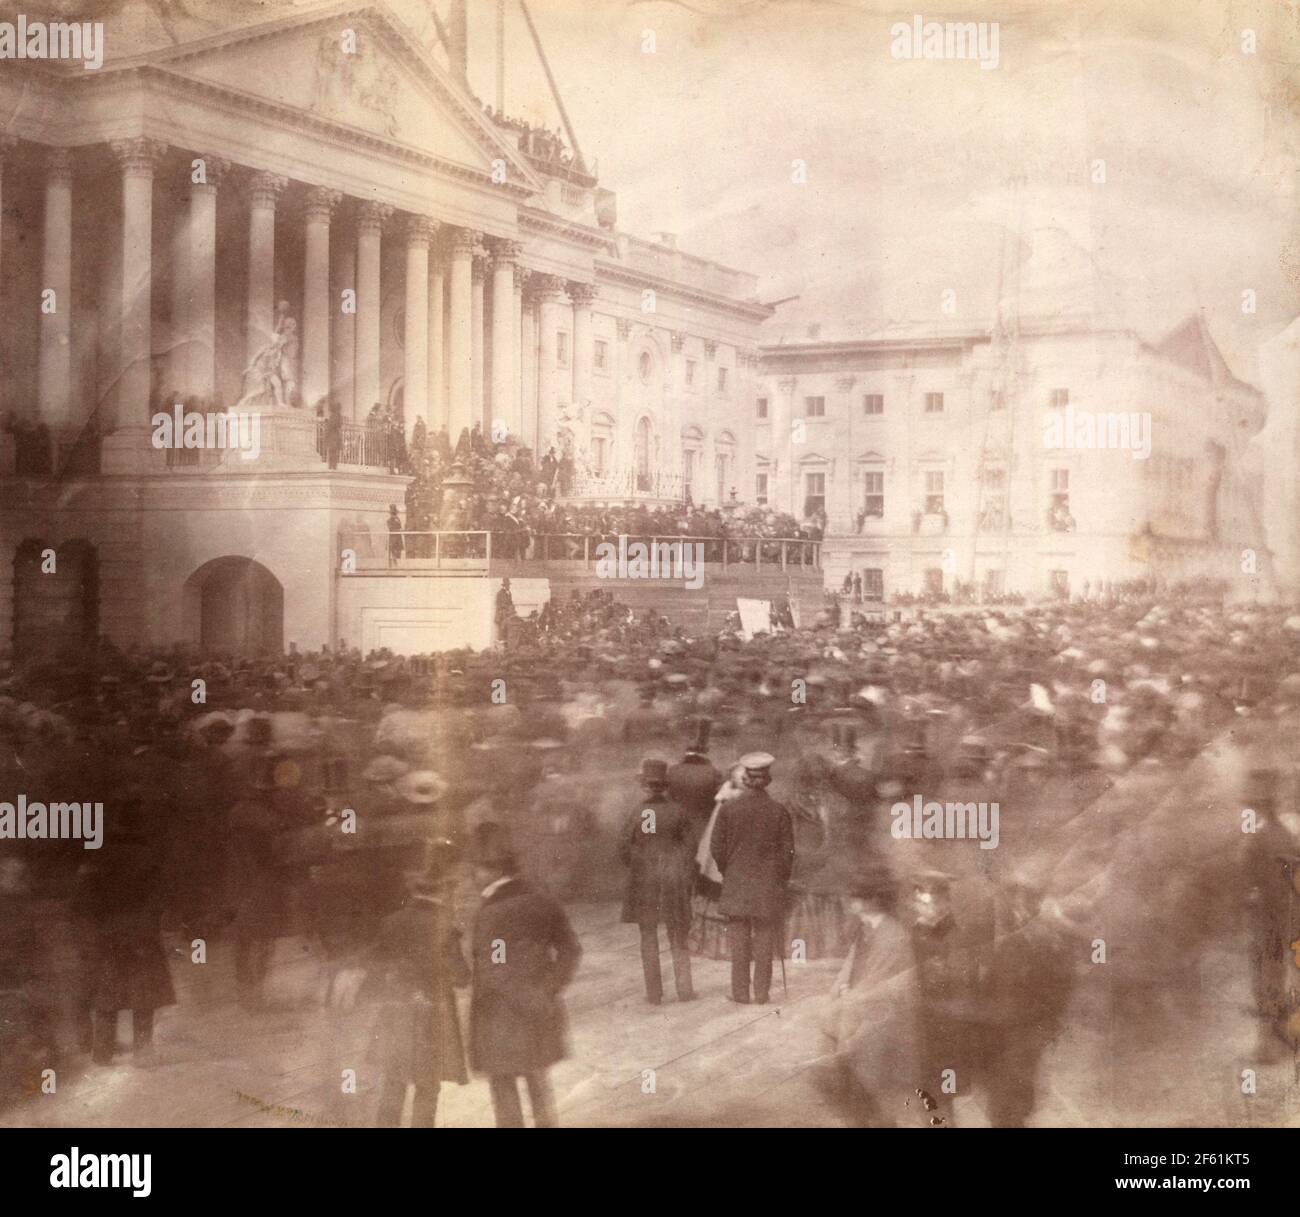 Première photo d'une inauguration présidentielle américaine, 1857 Banque D'Images